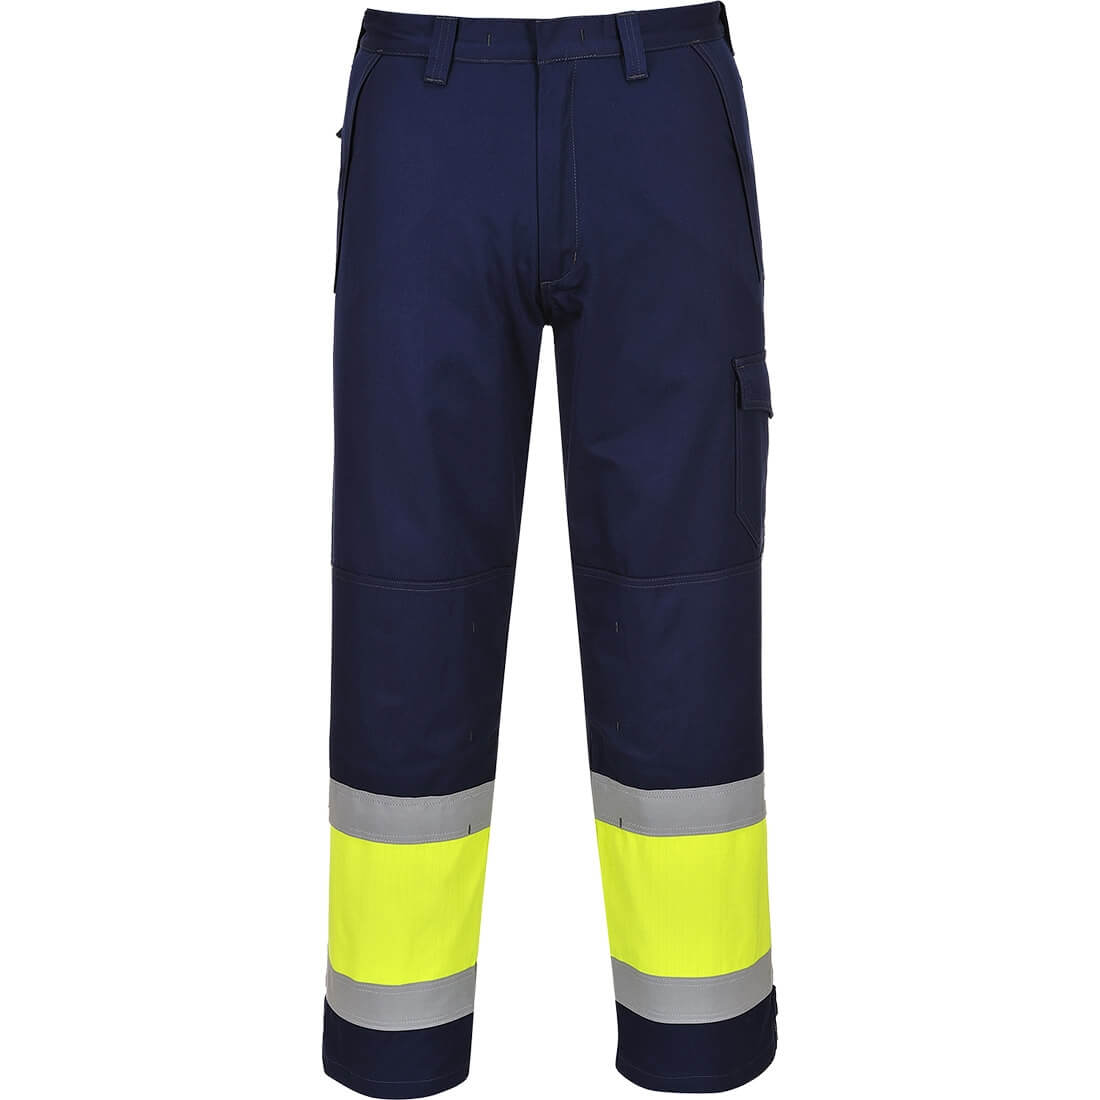 Pantalon de alta visibilidad MODAFLAME - Ropa de protección